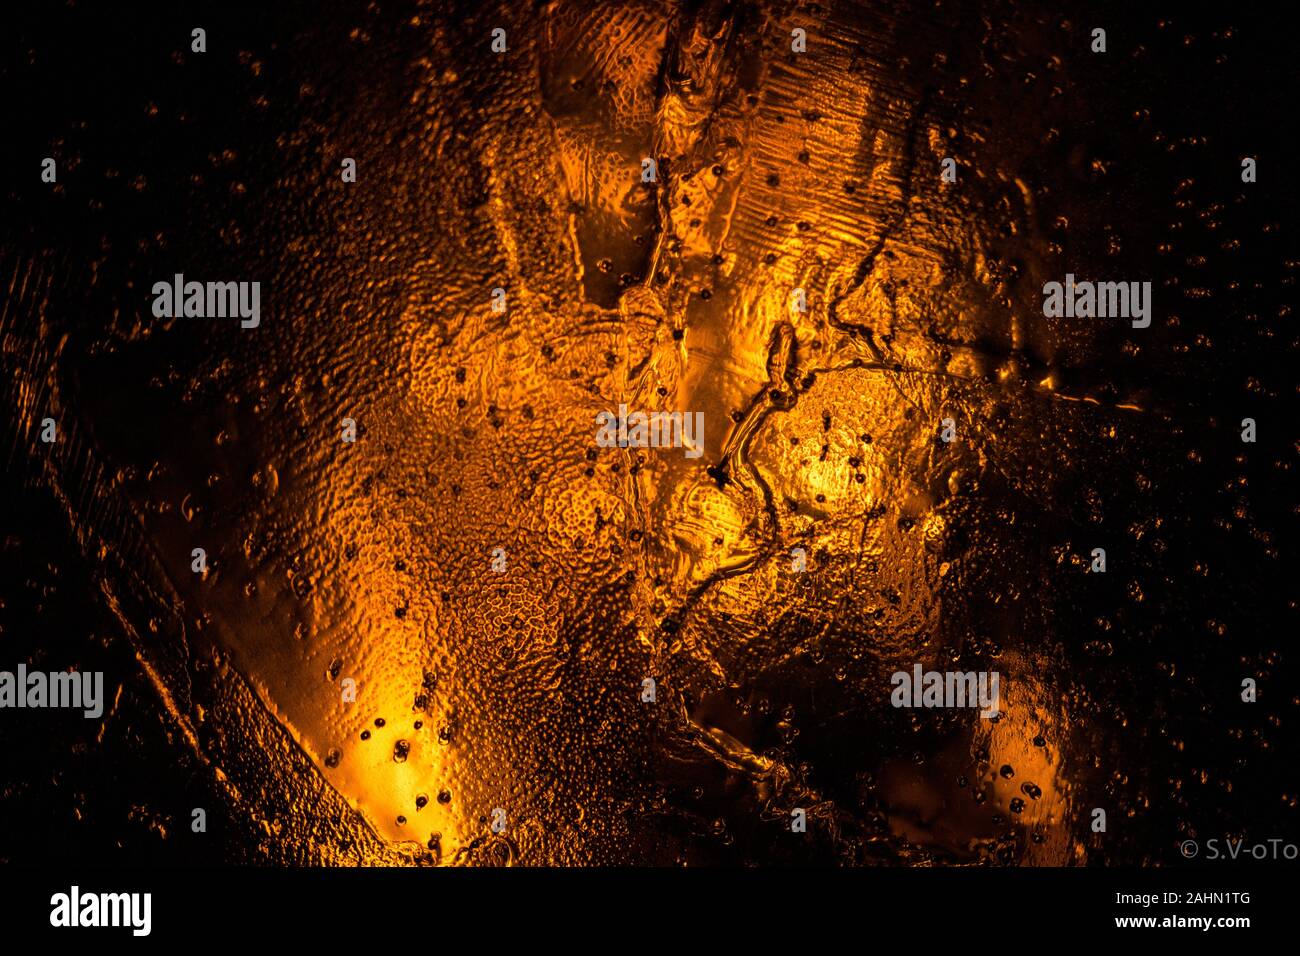 Feuer & Eis - Fotos mit Feuer hinter Eis Glänzende helle Stockfoto